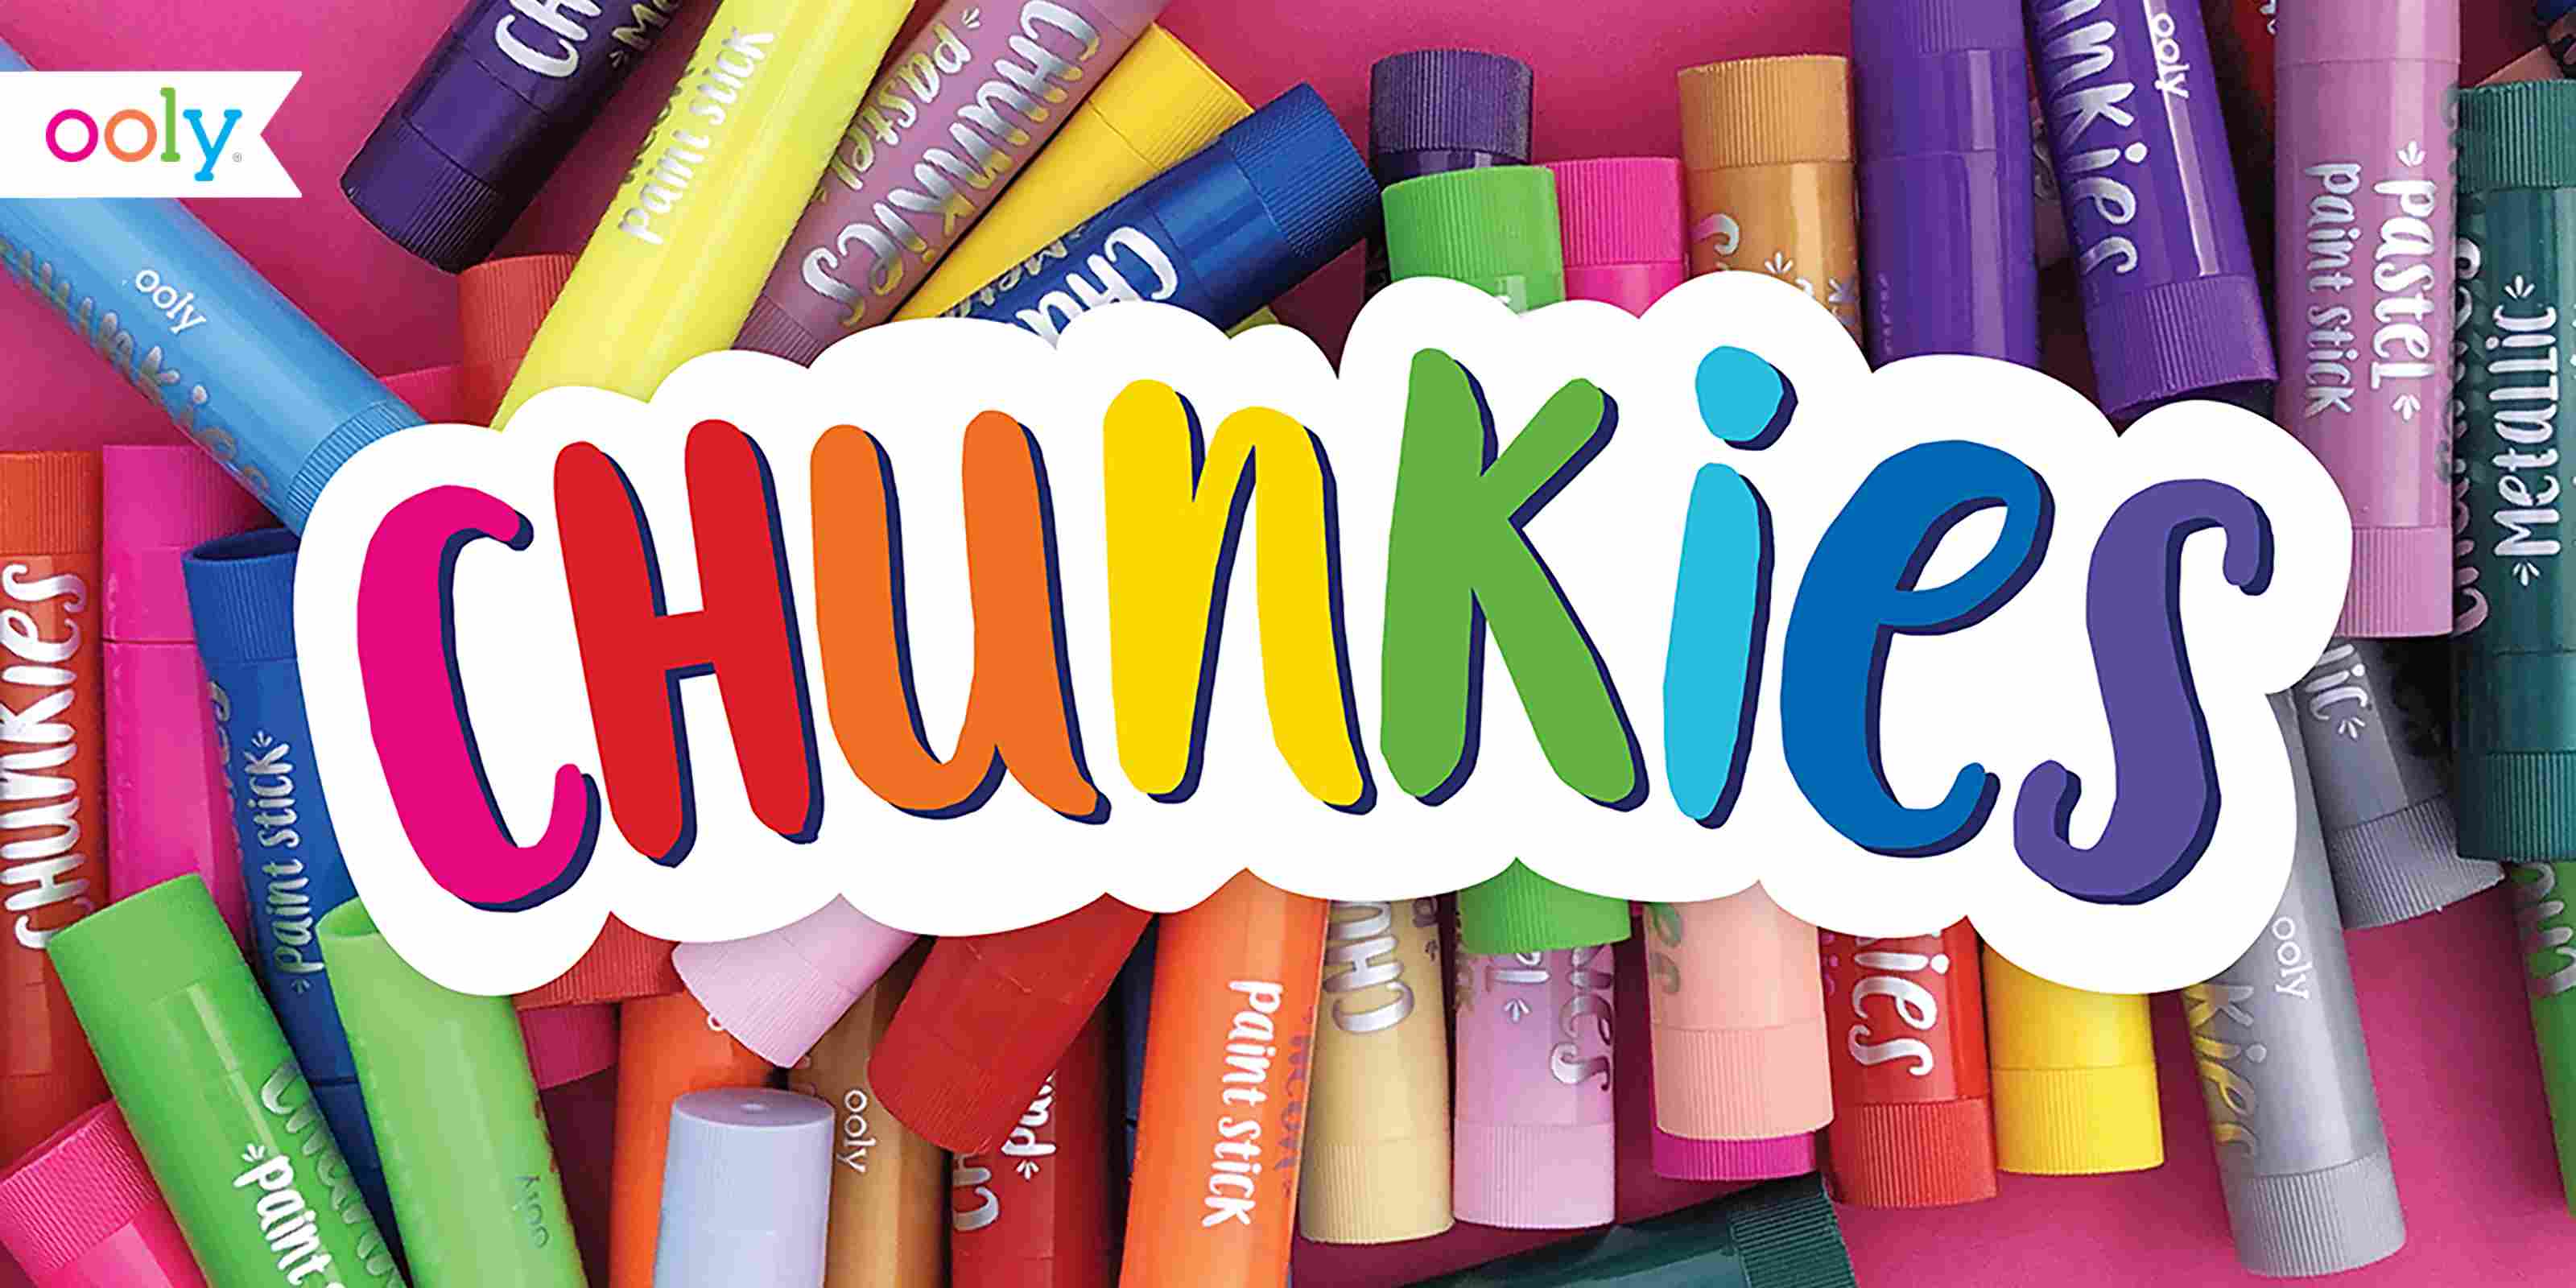 Chunkies Paint Sticks Variety Pack - Set of 24 - Magpiekids